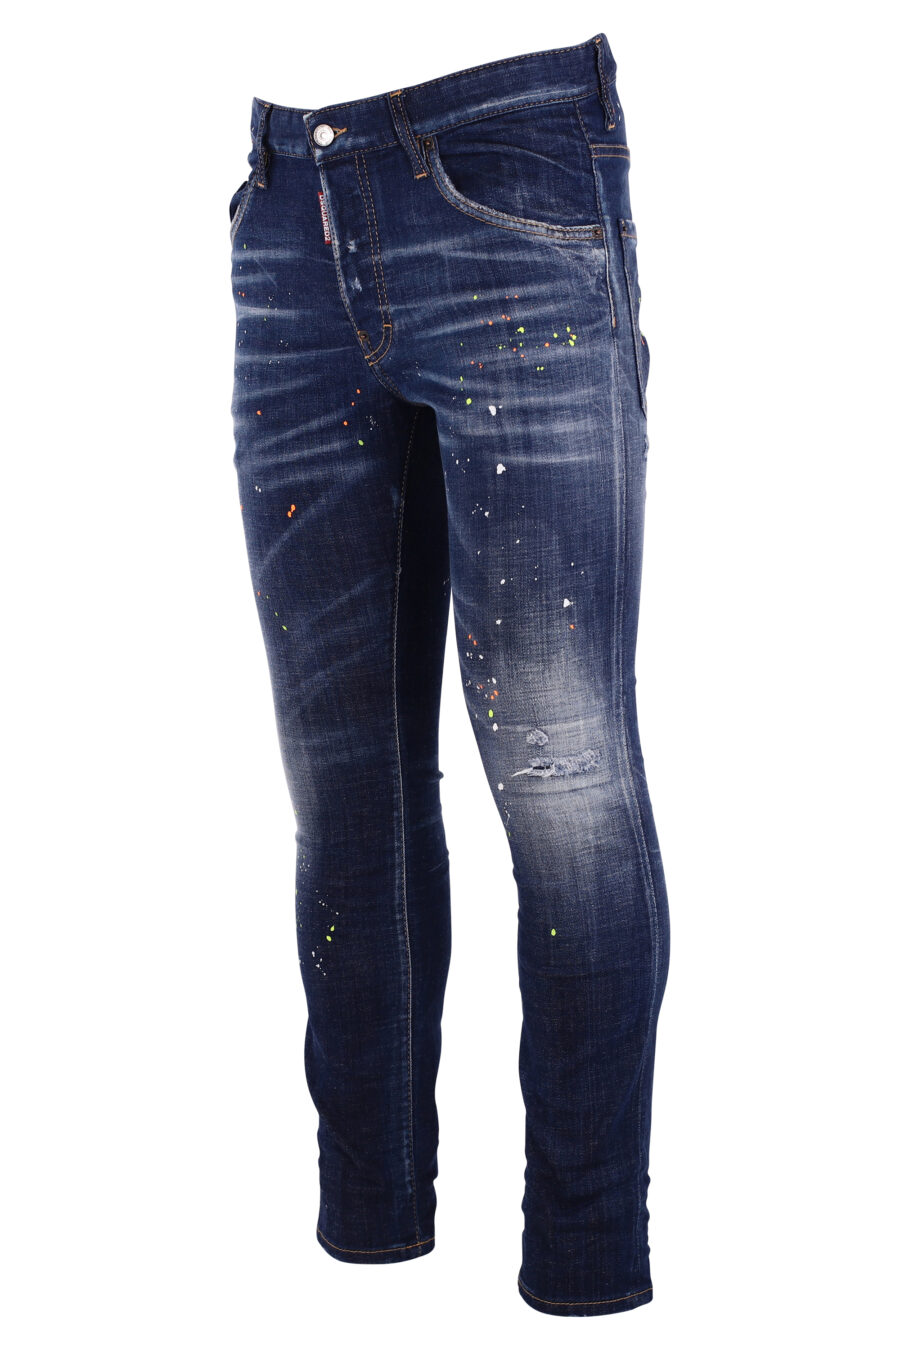 Jeans "skater jean" bleu avec des éclaboussures de peinture blanche - IMG 8994